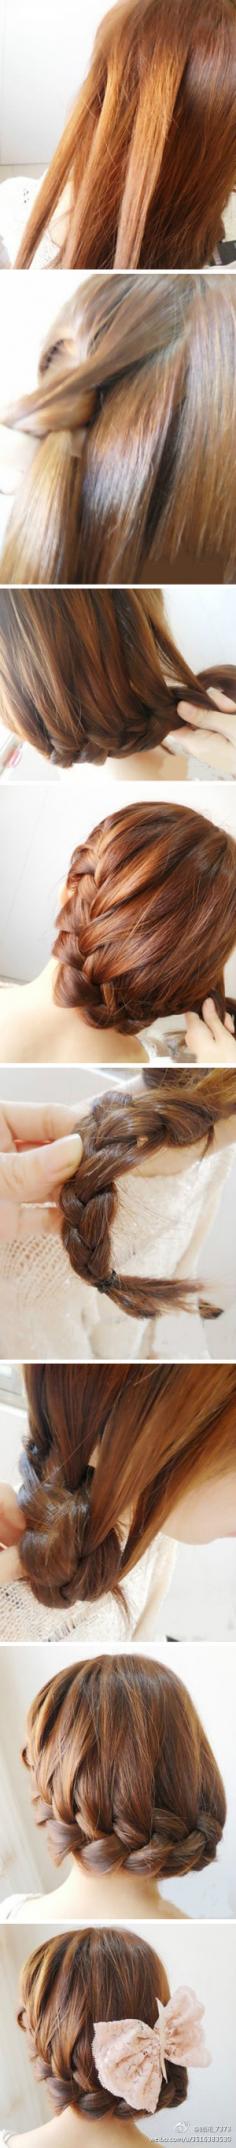 超唯美的韩式麻花辫盘发 打造优雅发型